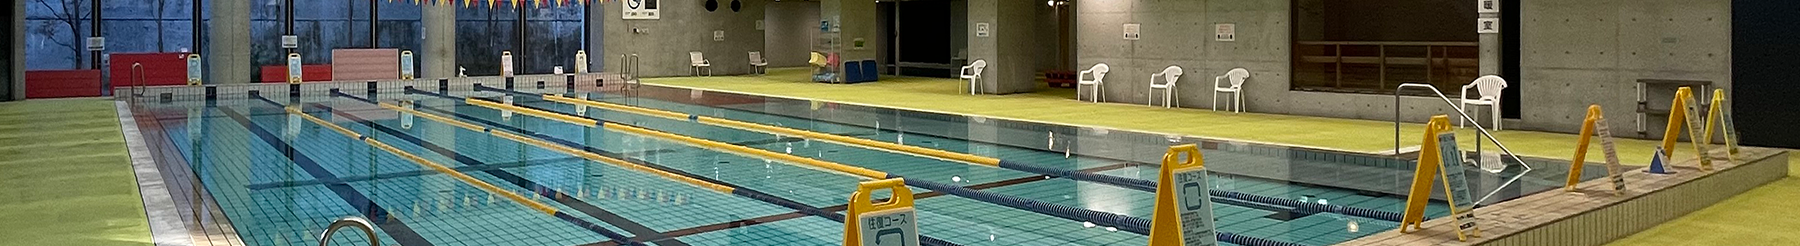 【重要】市立中学校水泳授業に伴う一般開放中止のご案内